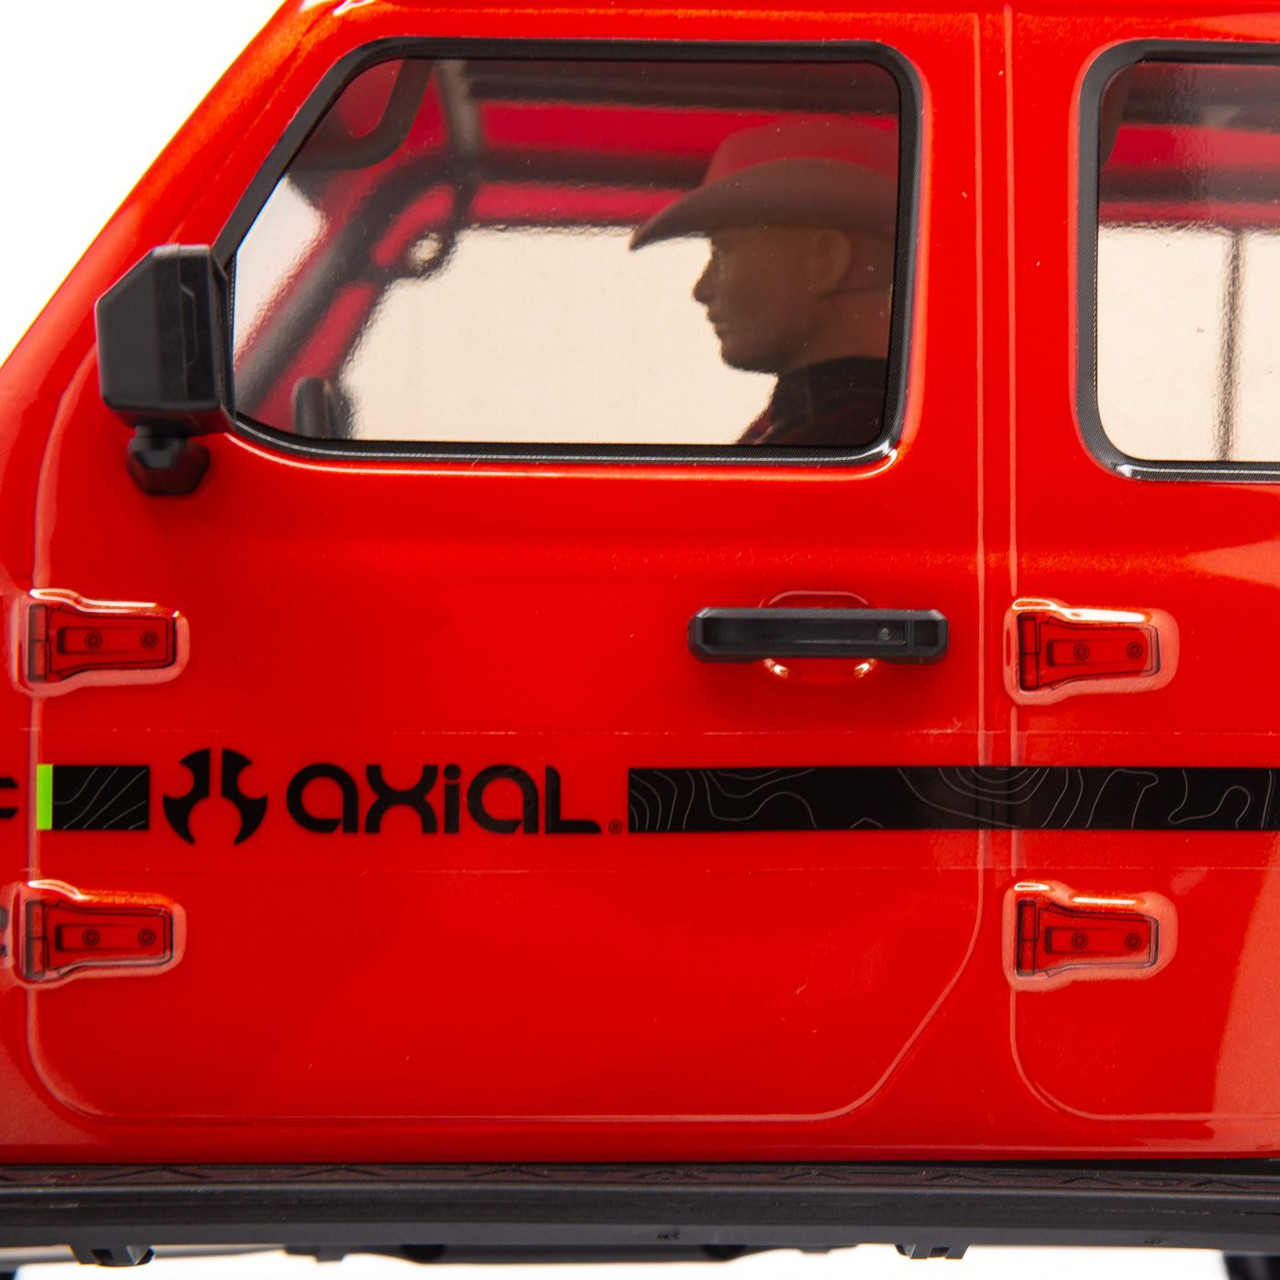 Axial SCX10 III "Jeep JLU Wrangler" RTR 4WD Rock Crawler (Orange) w/ Portals & DX3 2.4GHz Radio